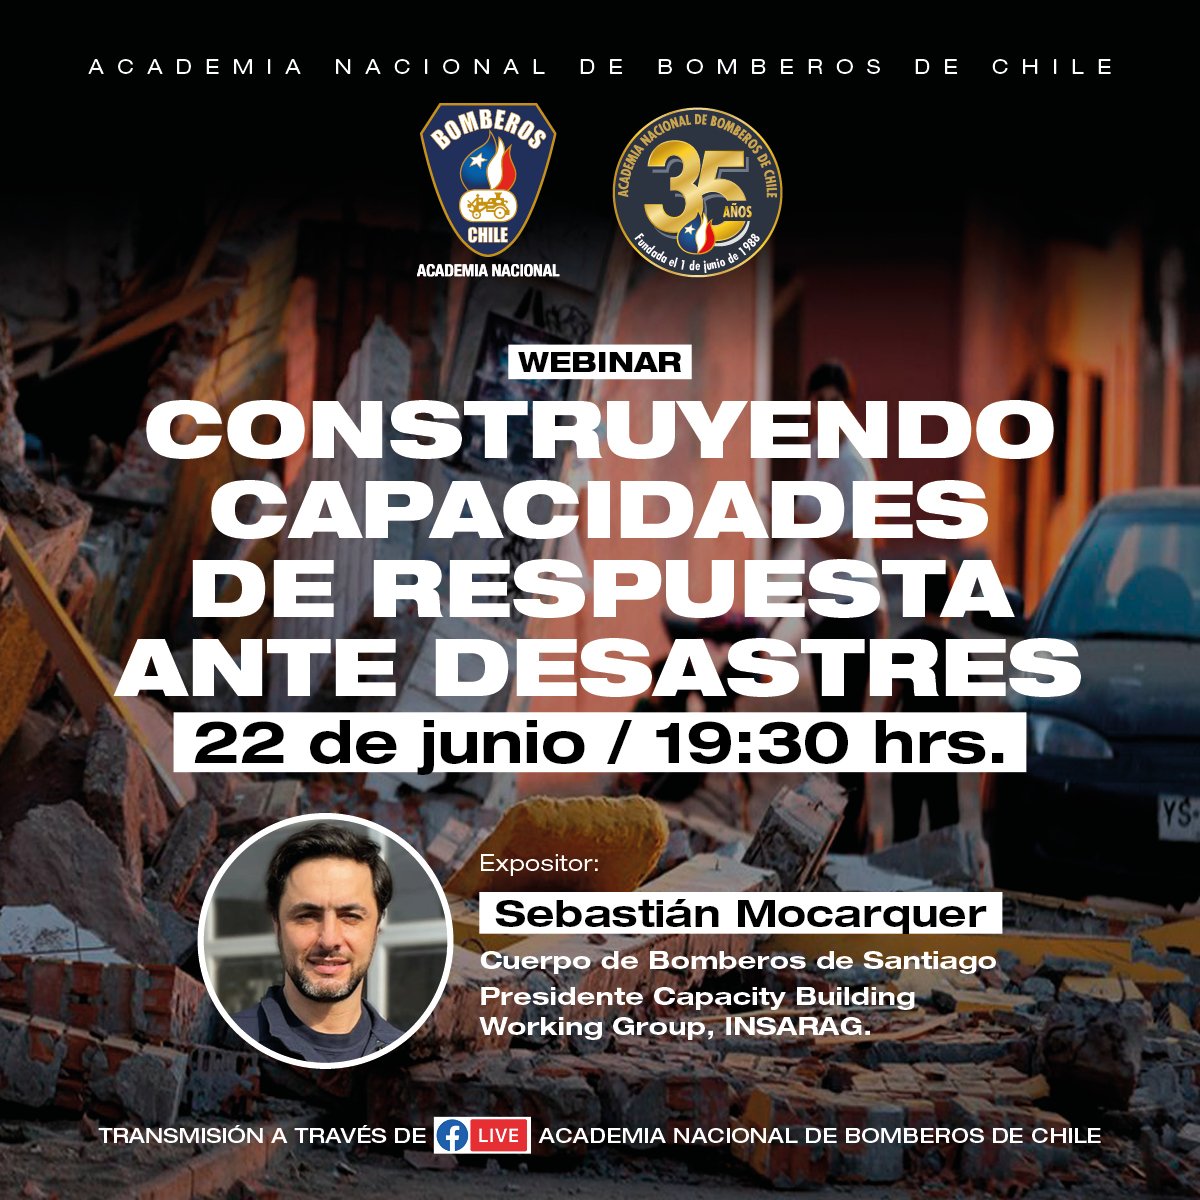 𝗪𝗘𝗕𝗜𝗡𝗔𝗥 | En el marco de su 35° aniversario, la @ANB_Chile presenta el webinar 'Construyendo Capacidad de Respuesta ante Desastres', dictado por Sebastián Mocarquer. 👉 Agenda: 🗓 Jueves 22 / 🕜 19.30 horas.